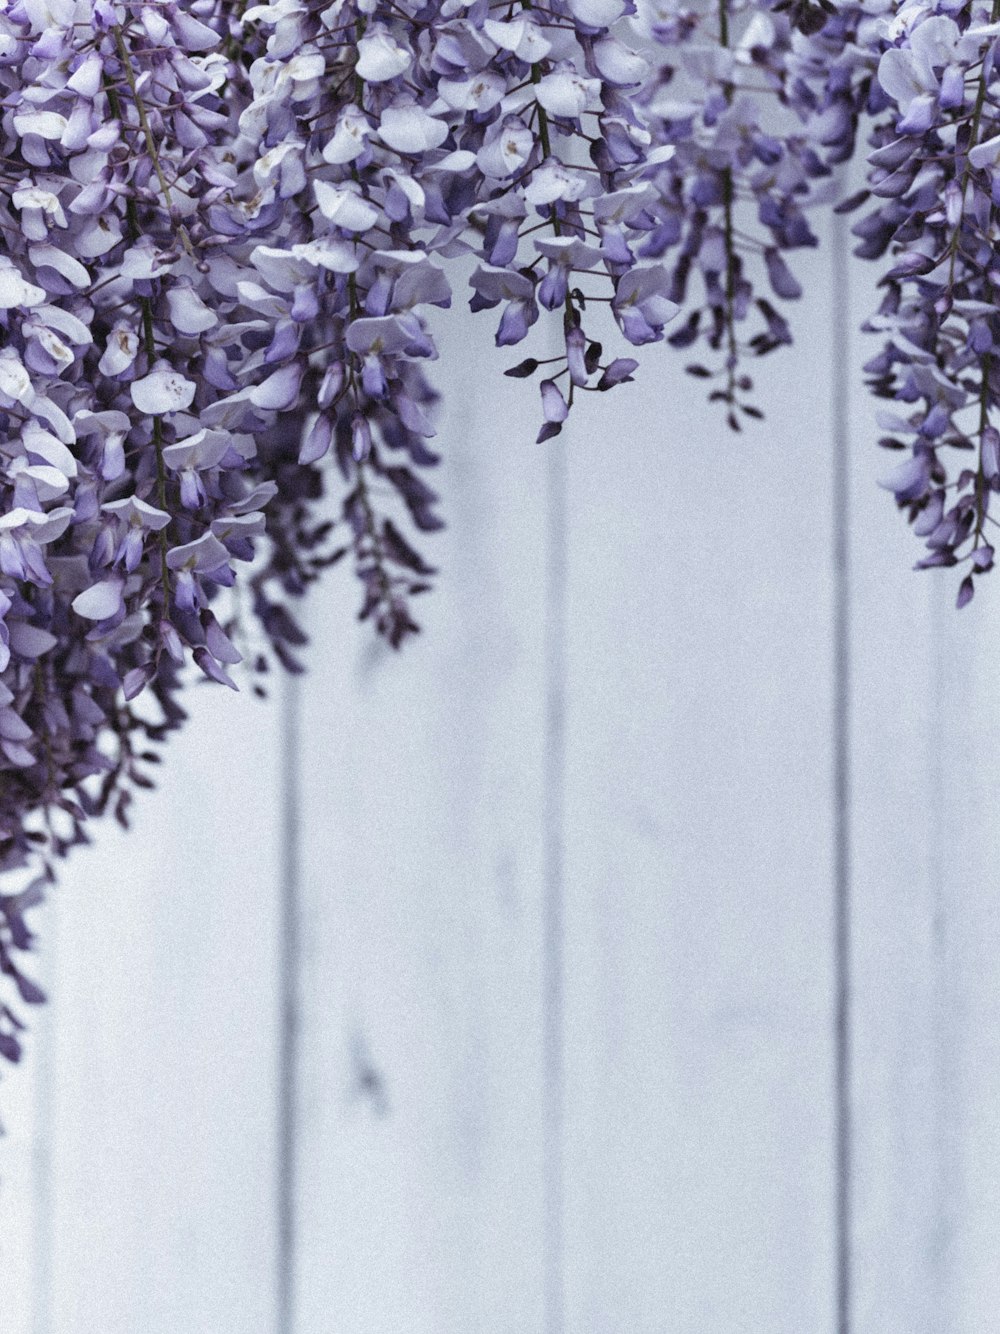 fiori viola e bianchi su staccionata di legno grigia